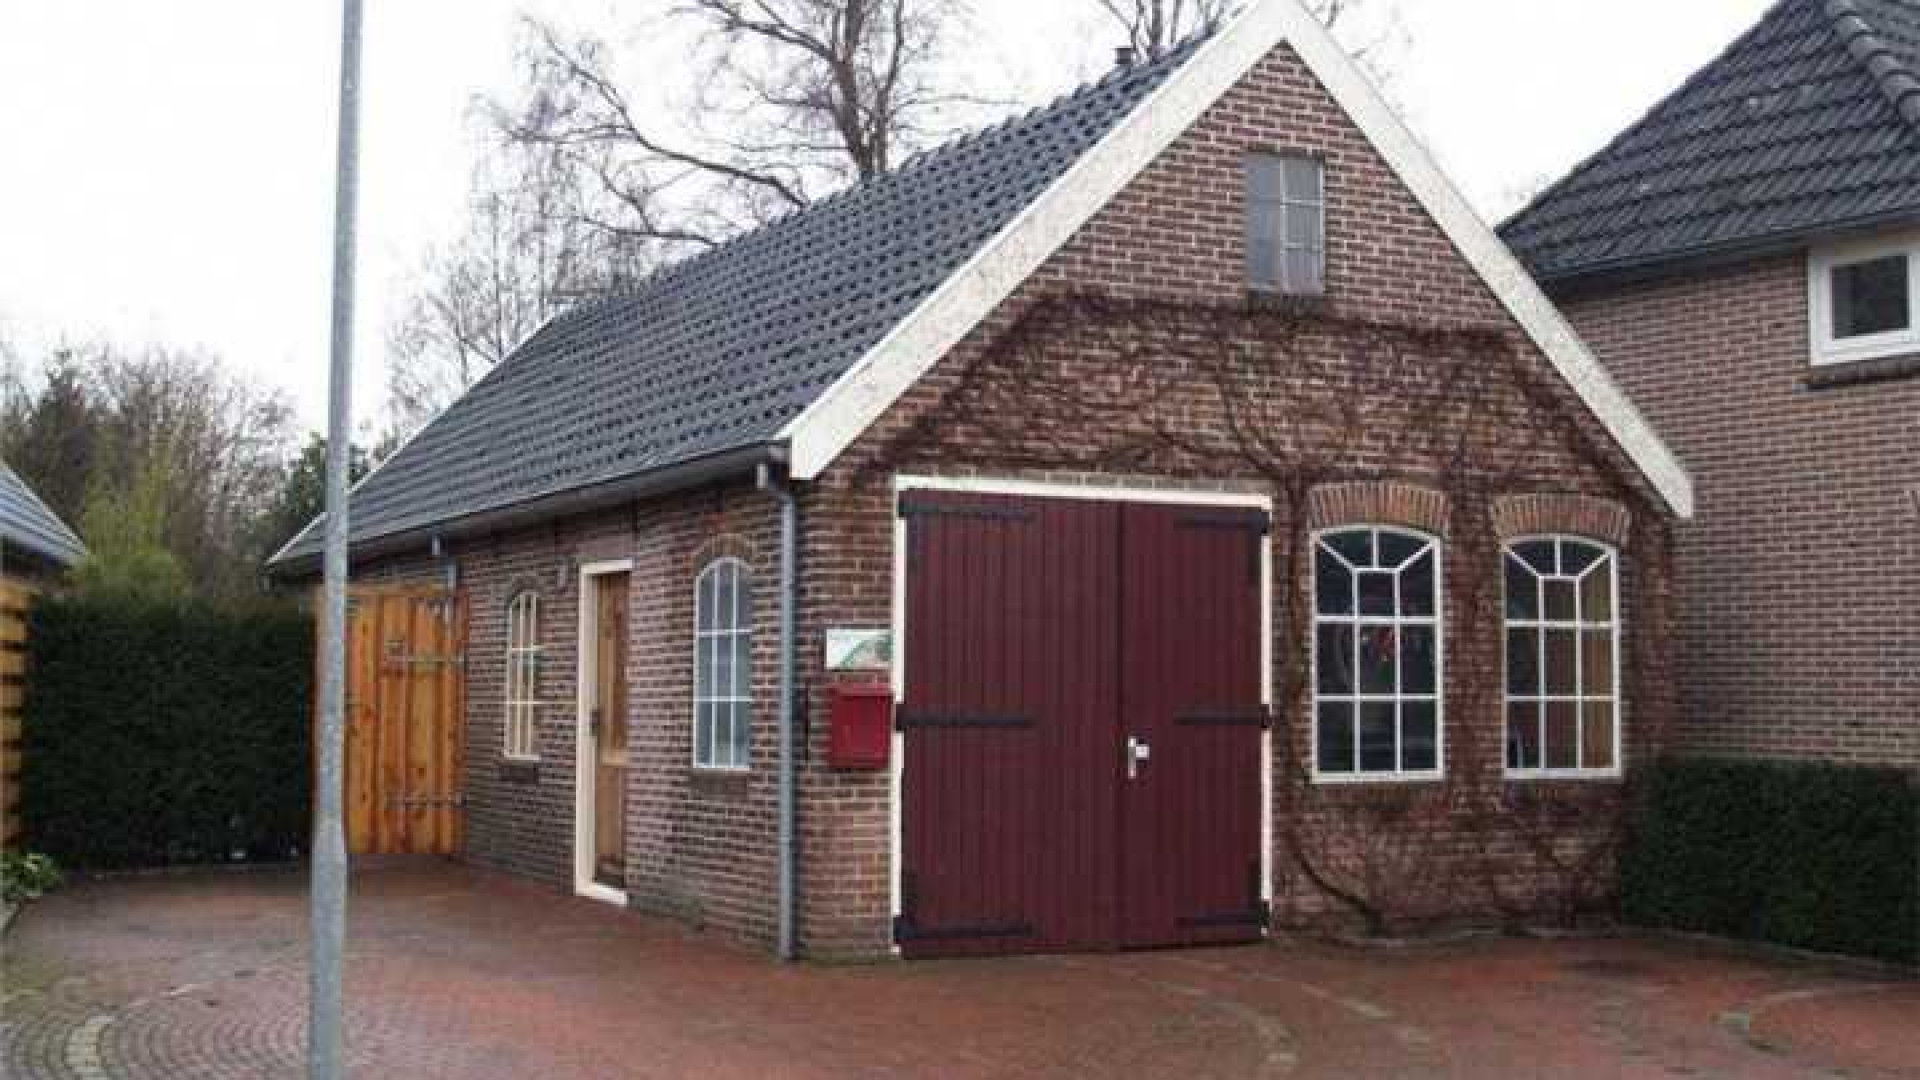 Johan Derksen koopt huis met voor hem sterke emotionele waarde. Zie foto's